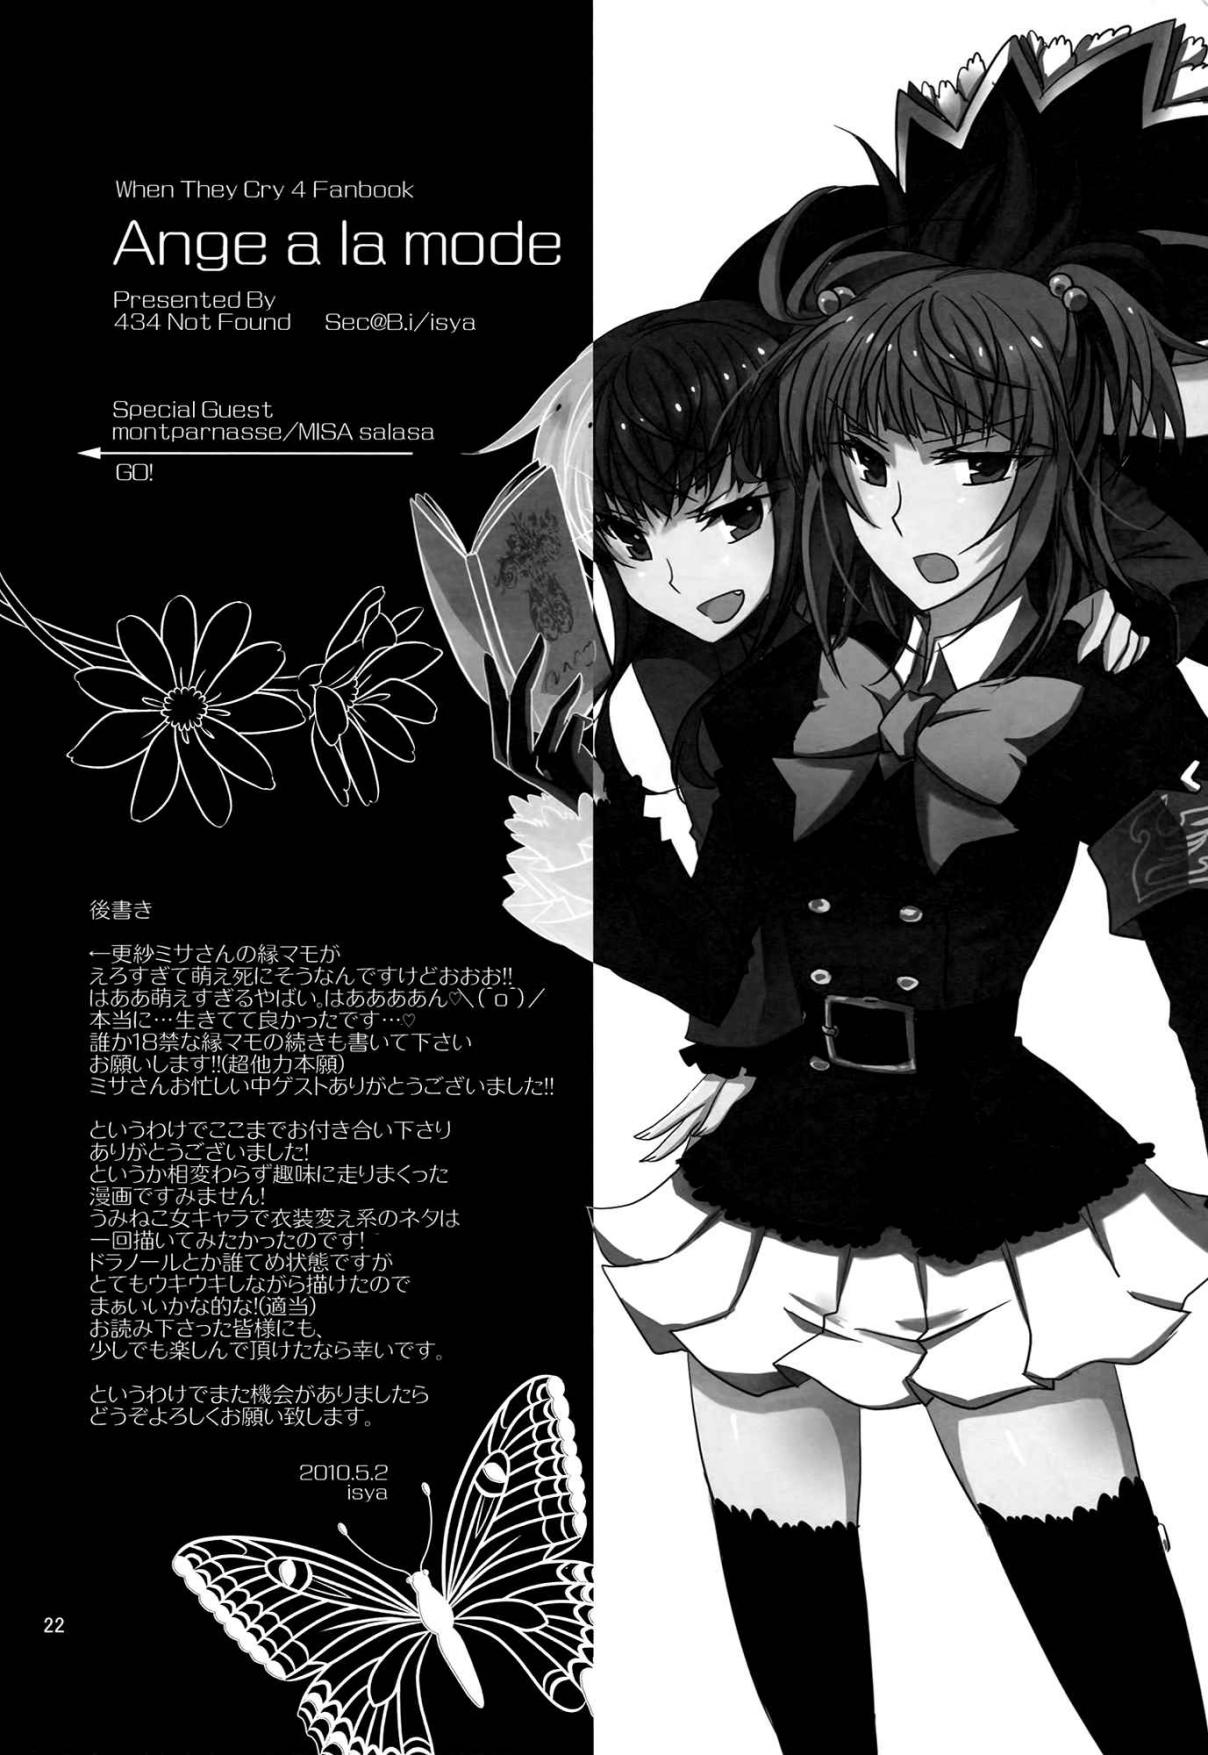 Umineko no Naku Koro ni Ange a la mode (Doujinshi) Oneshot